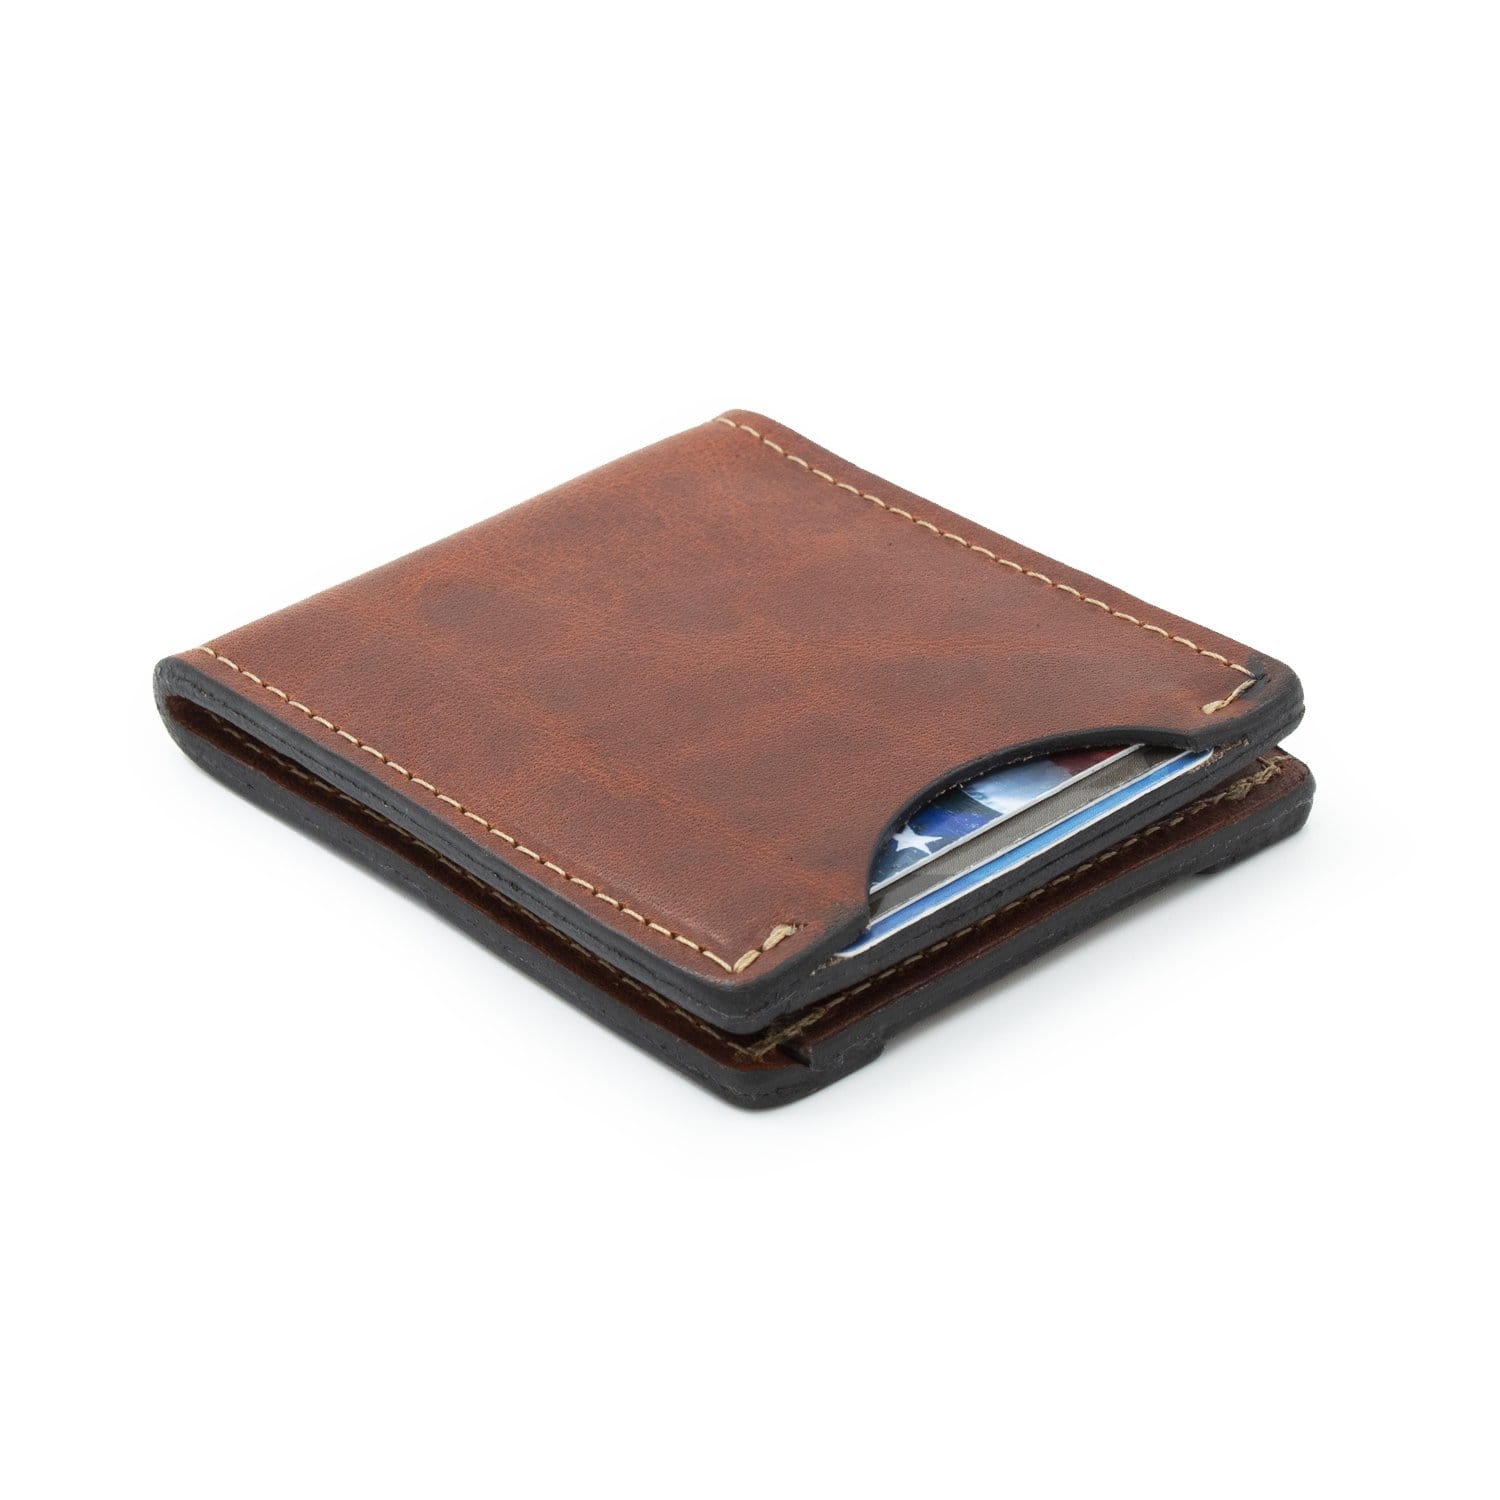 Thin wallet